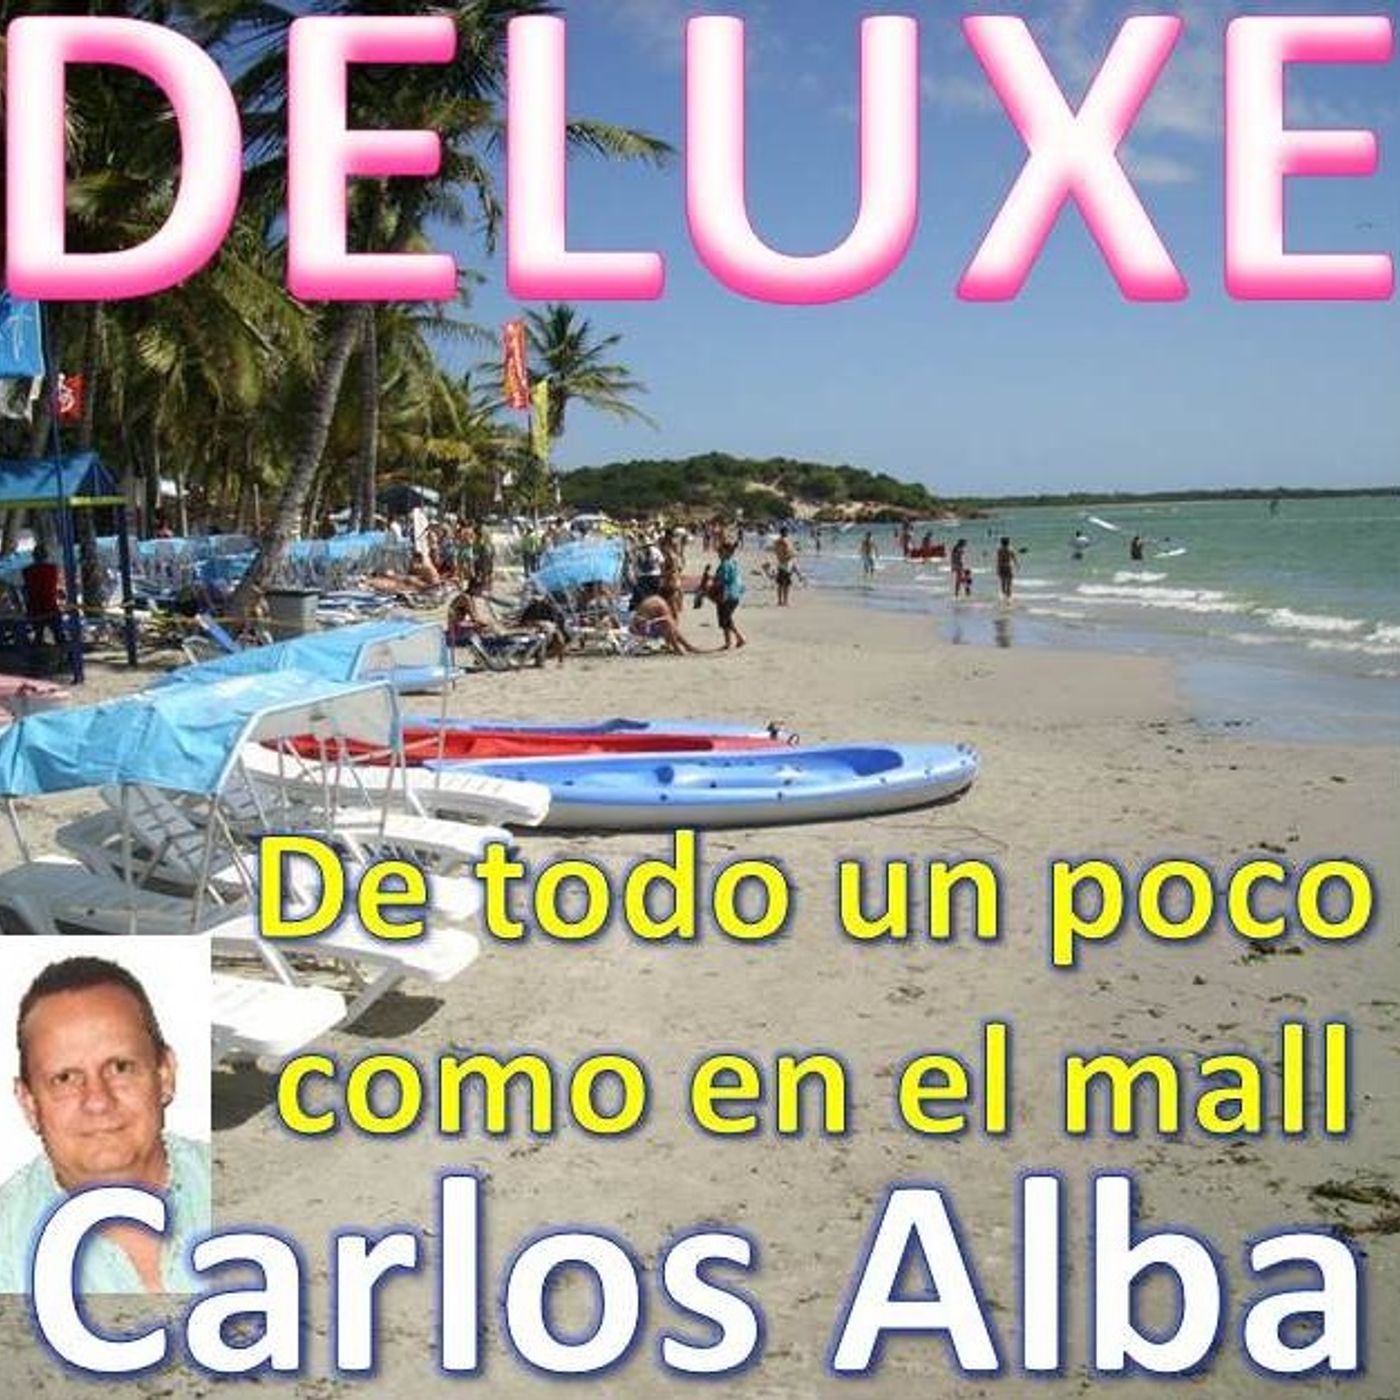 Carlos Alba Radio